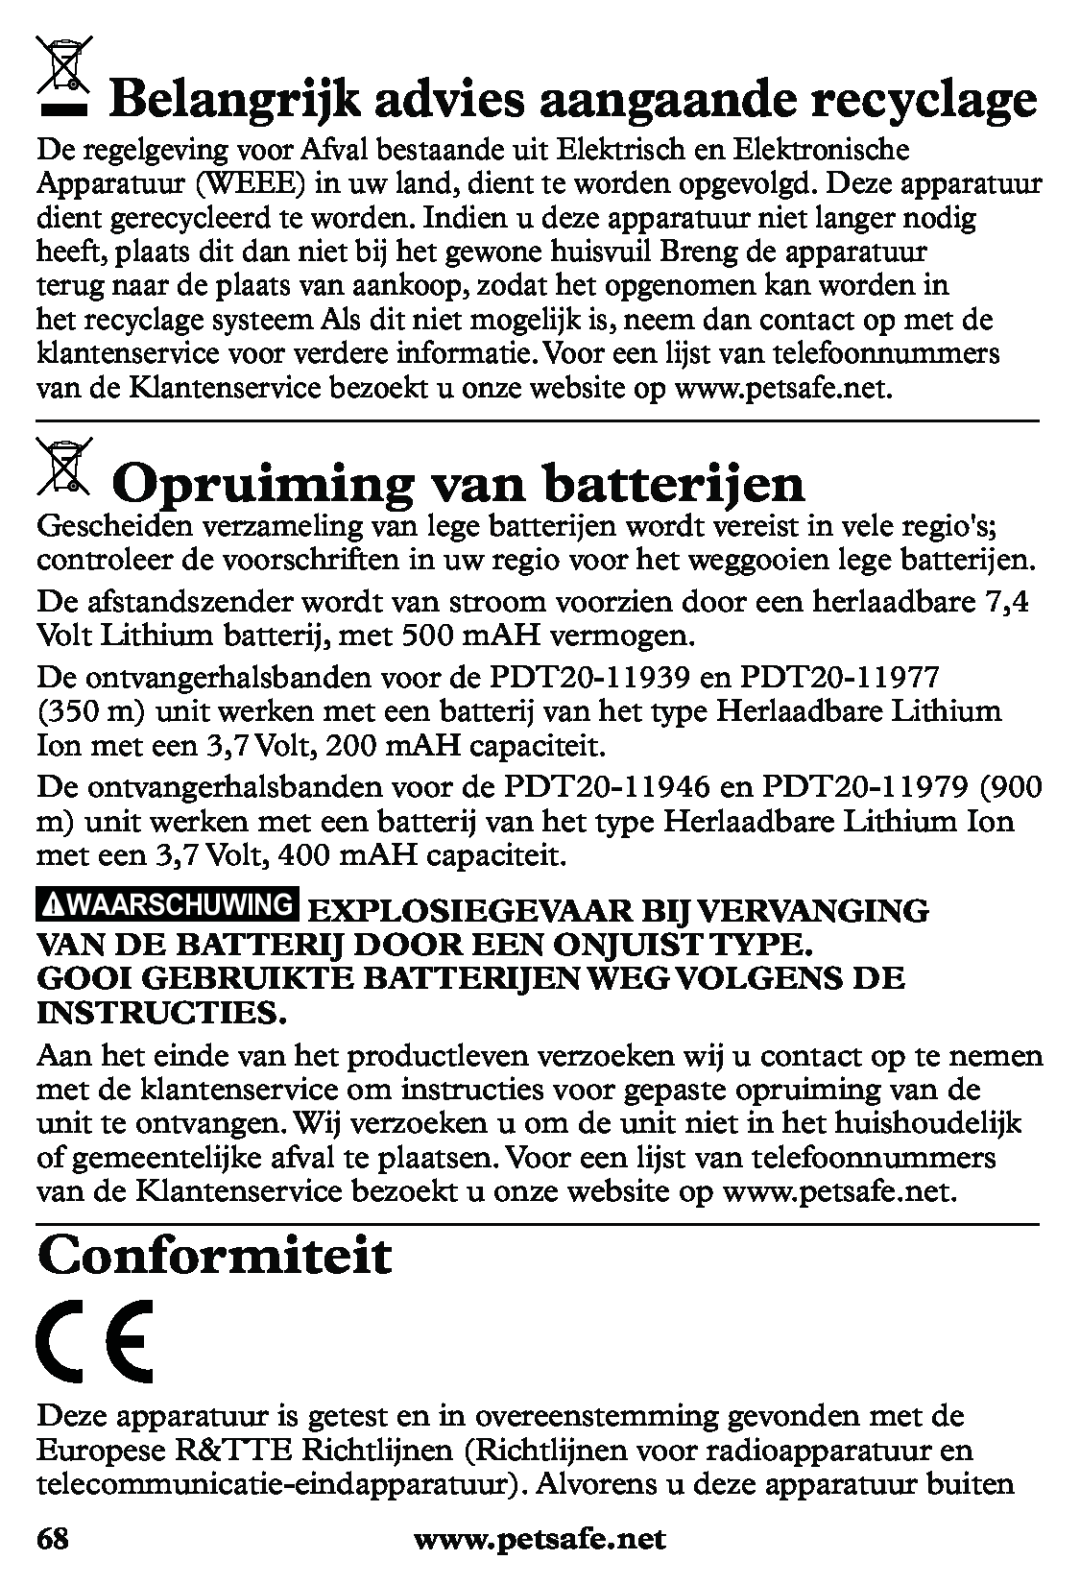 Petsafe PDT20-11939 manuel dutilisation Belangrijk advies aangaande recyclage, Opruiming van batterijen, Conformiteit 